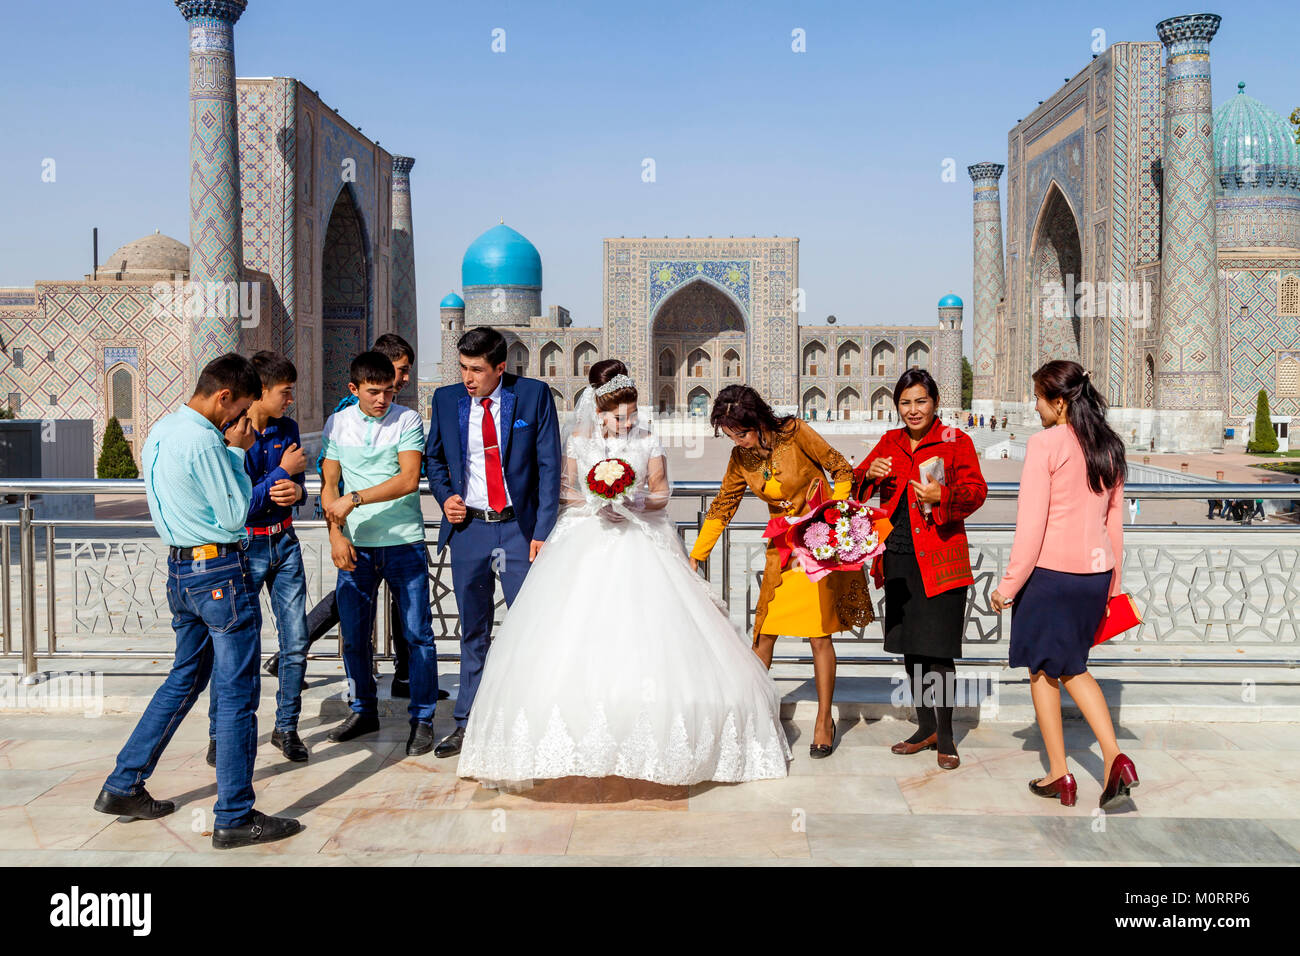 Ein junges Paar, kommen an der Registan für Ihre Hochzeit Fotos, der Registan, Samarkand, Usbekistan Komplex Stockfoto